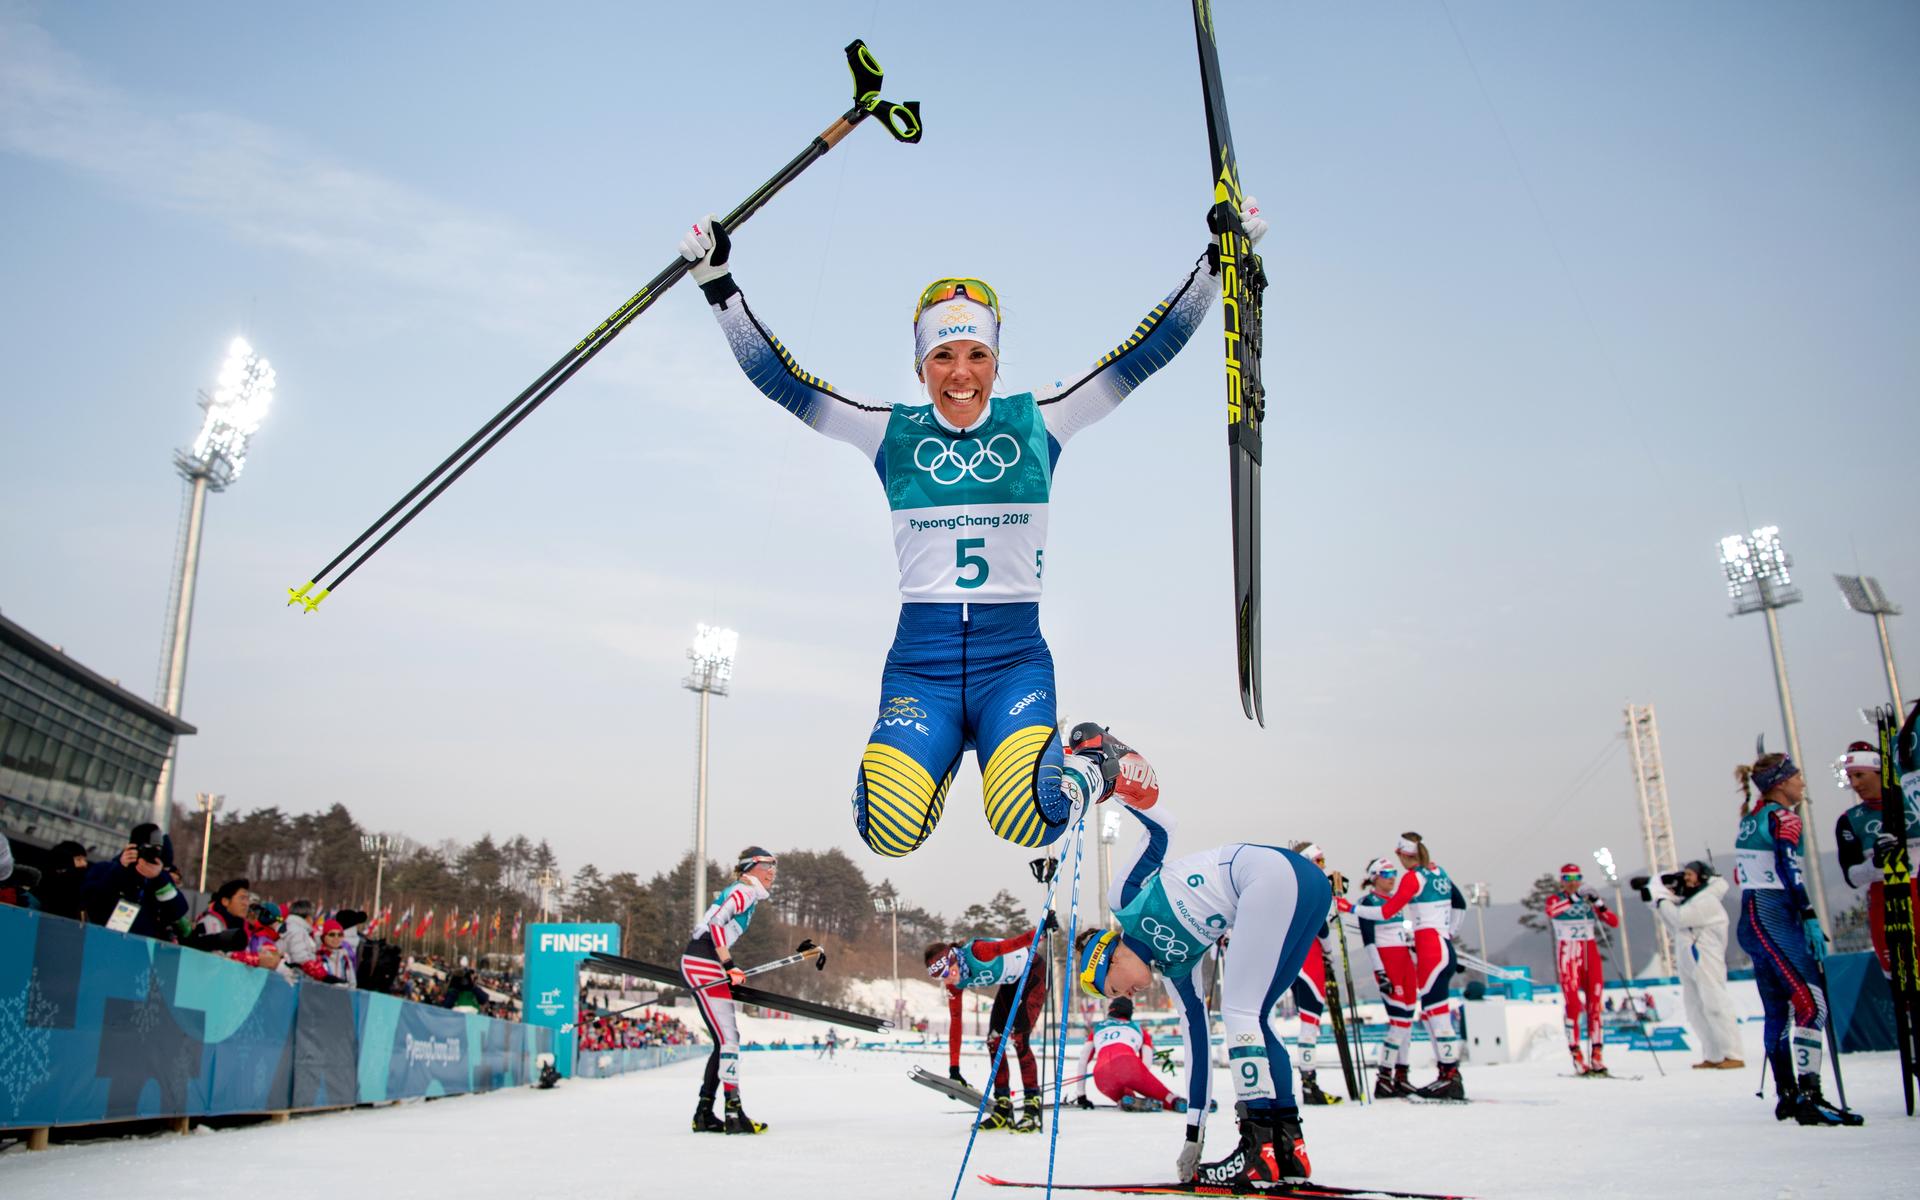 Precis som i Sotji 2014 blev OS i Pyeongchang minnesvärt och en dundersuccé för Charlotte Kalla. 